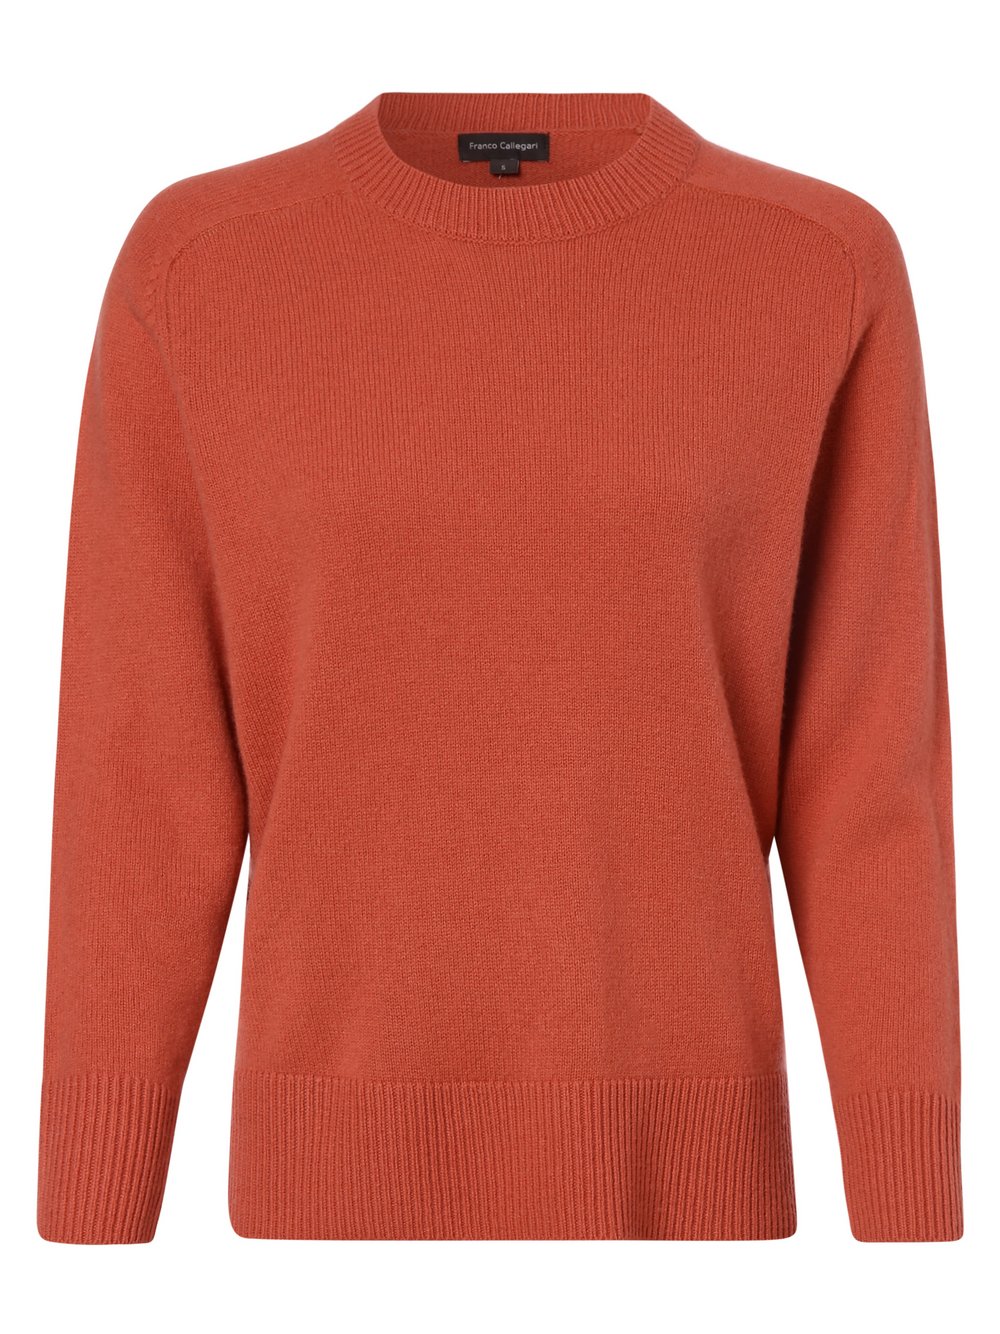 Franco Callegari - Damski sweter z wełny merino, różowy|czerwony